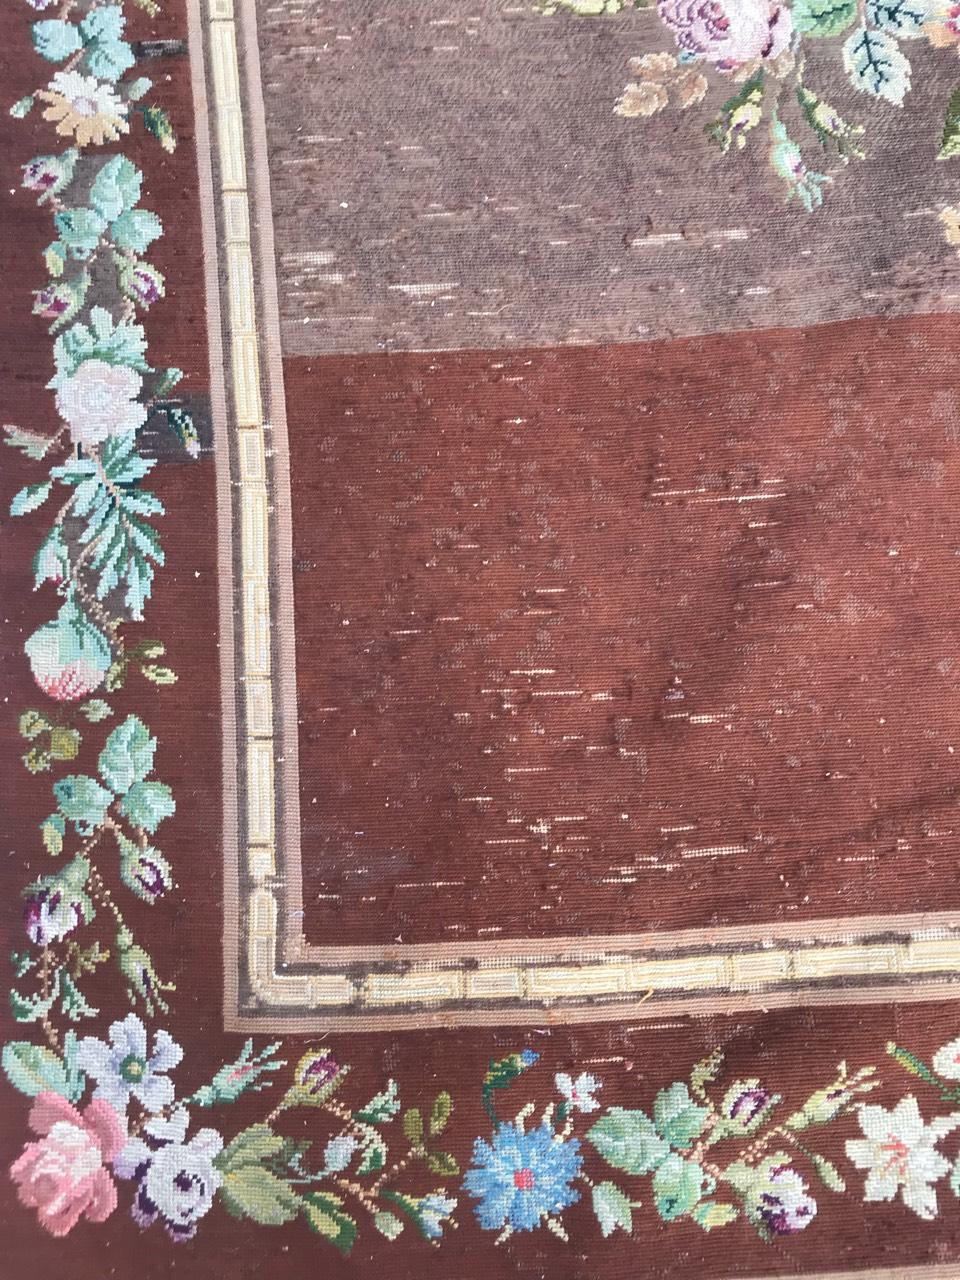 Magnifique tapisserie à l'aiguille ou tapis de la fin du 19e siècle, avec un motif floral et de belles couleurs, entièrement brodée à la main avec de la laine et de la soie sur une base de coton.

✨✨✨
